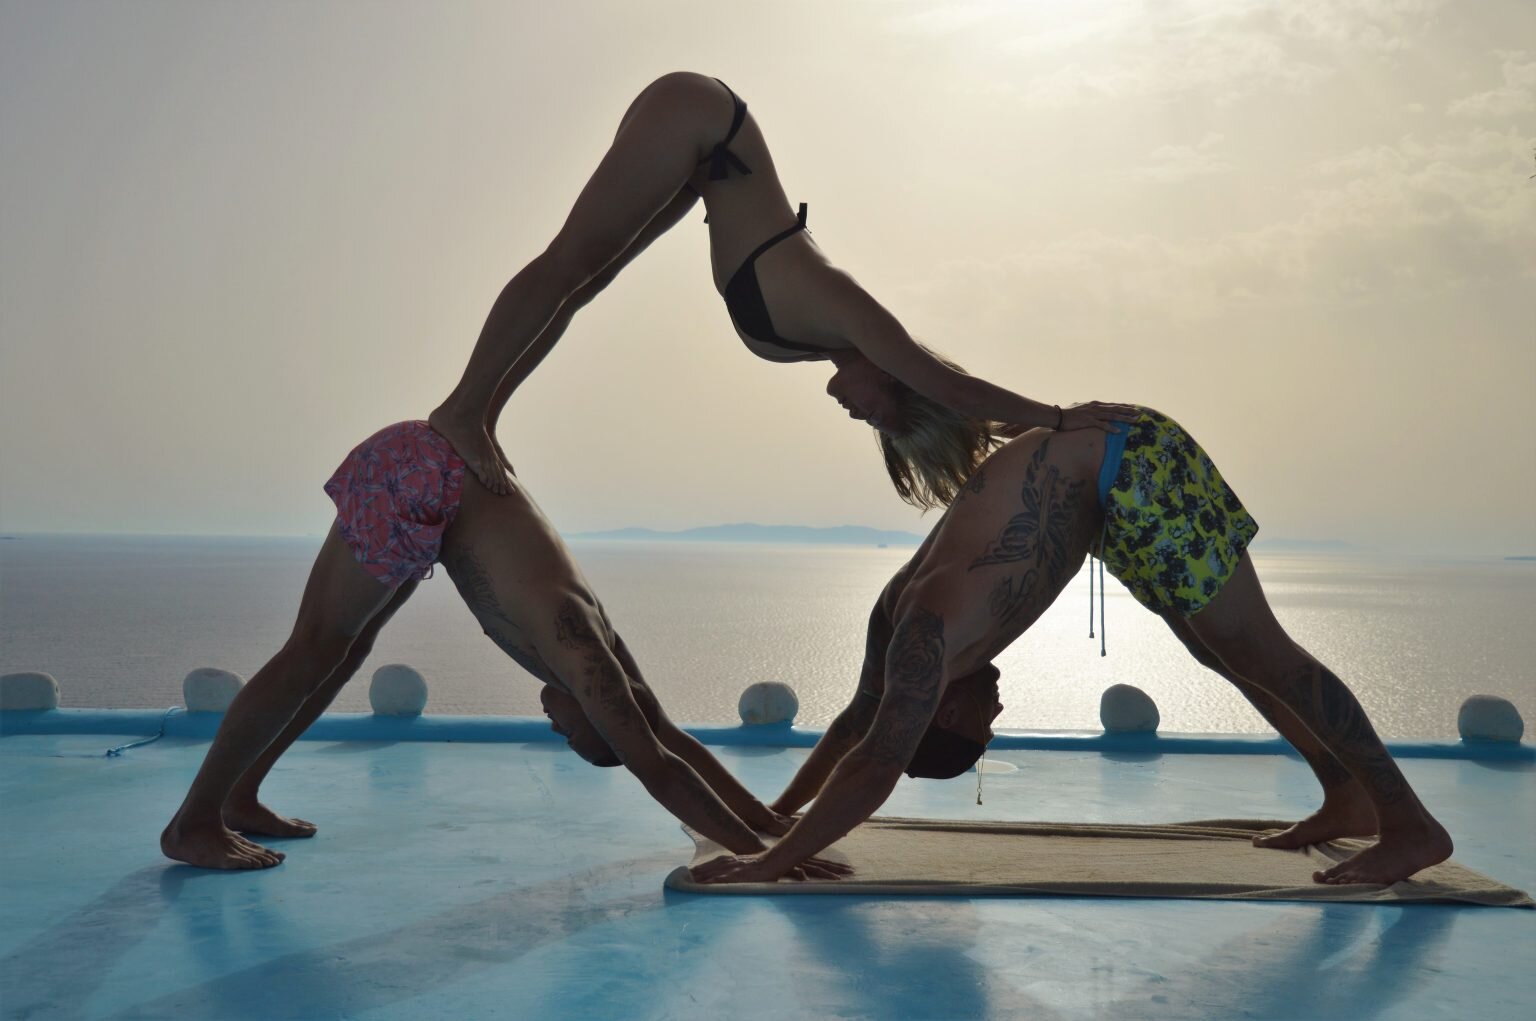 Three person acro yoga | Easy yoga poses, 3 person yoga poses, Yoga poses